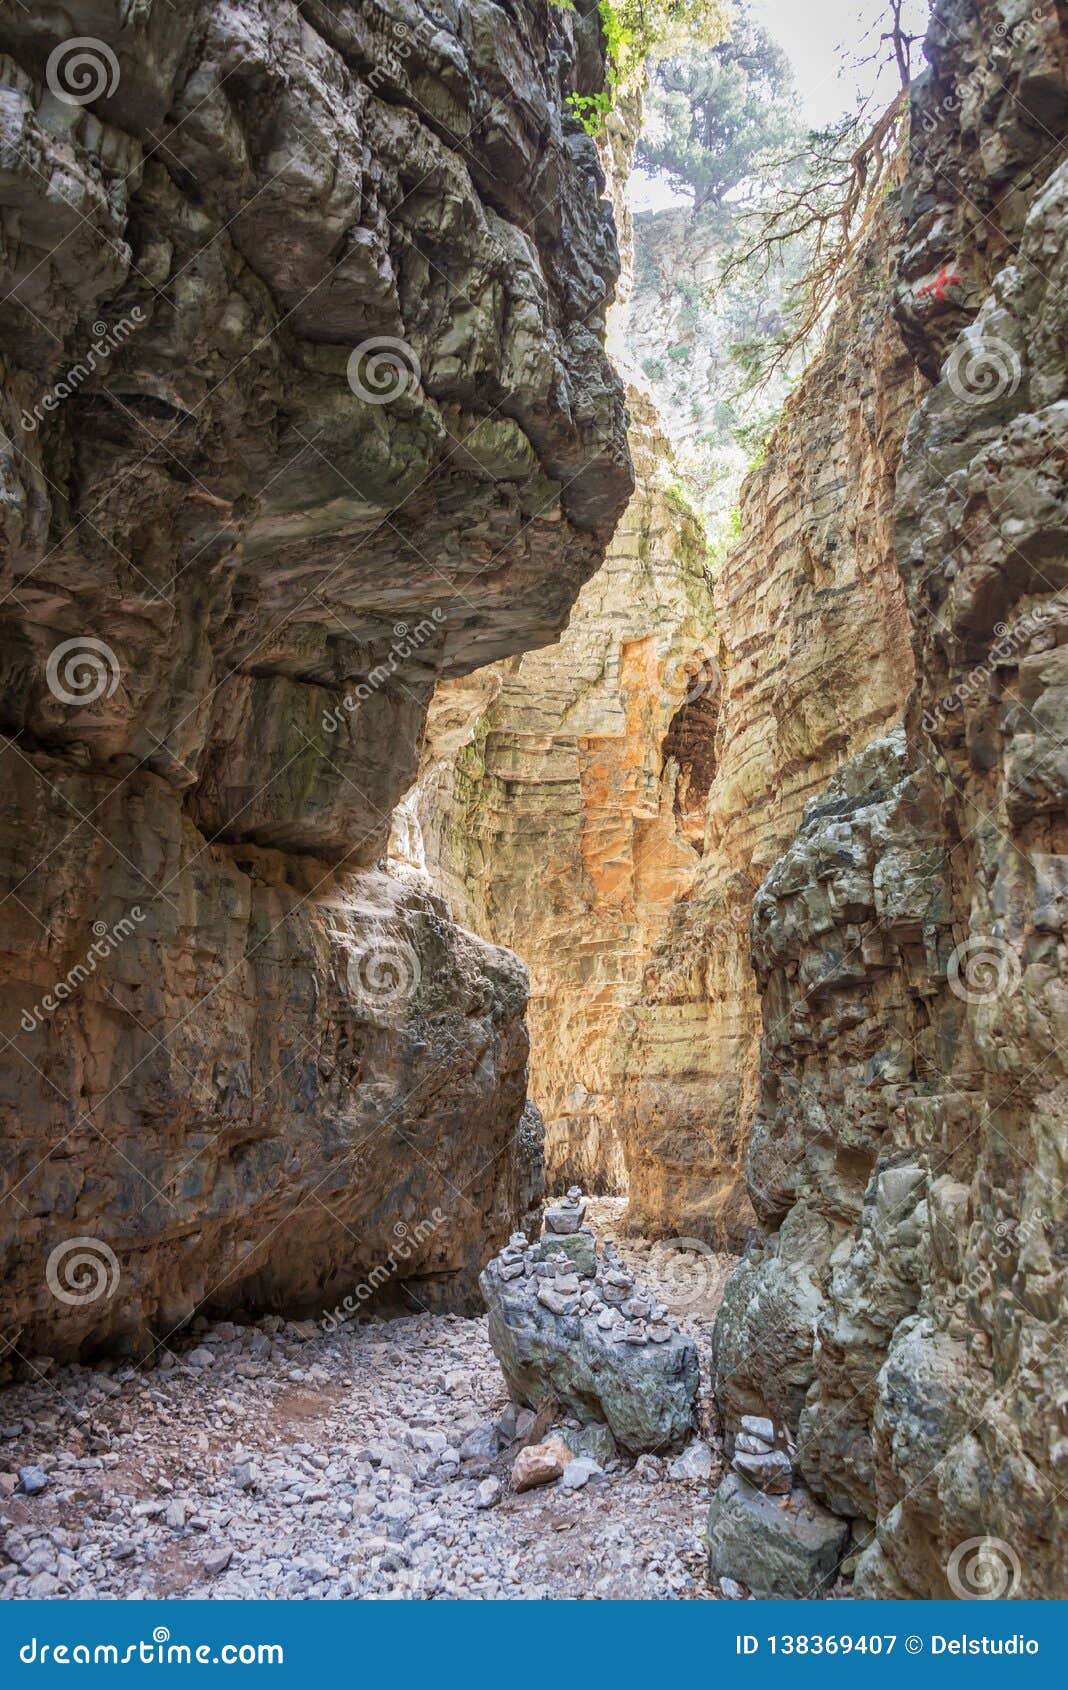 narrow trail in imbros gorge, crete greece